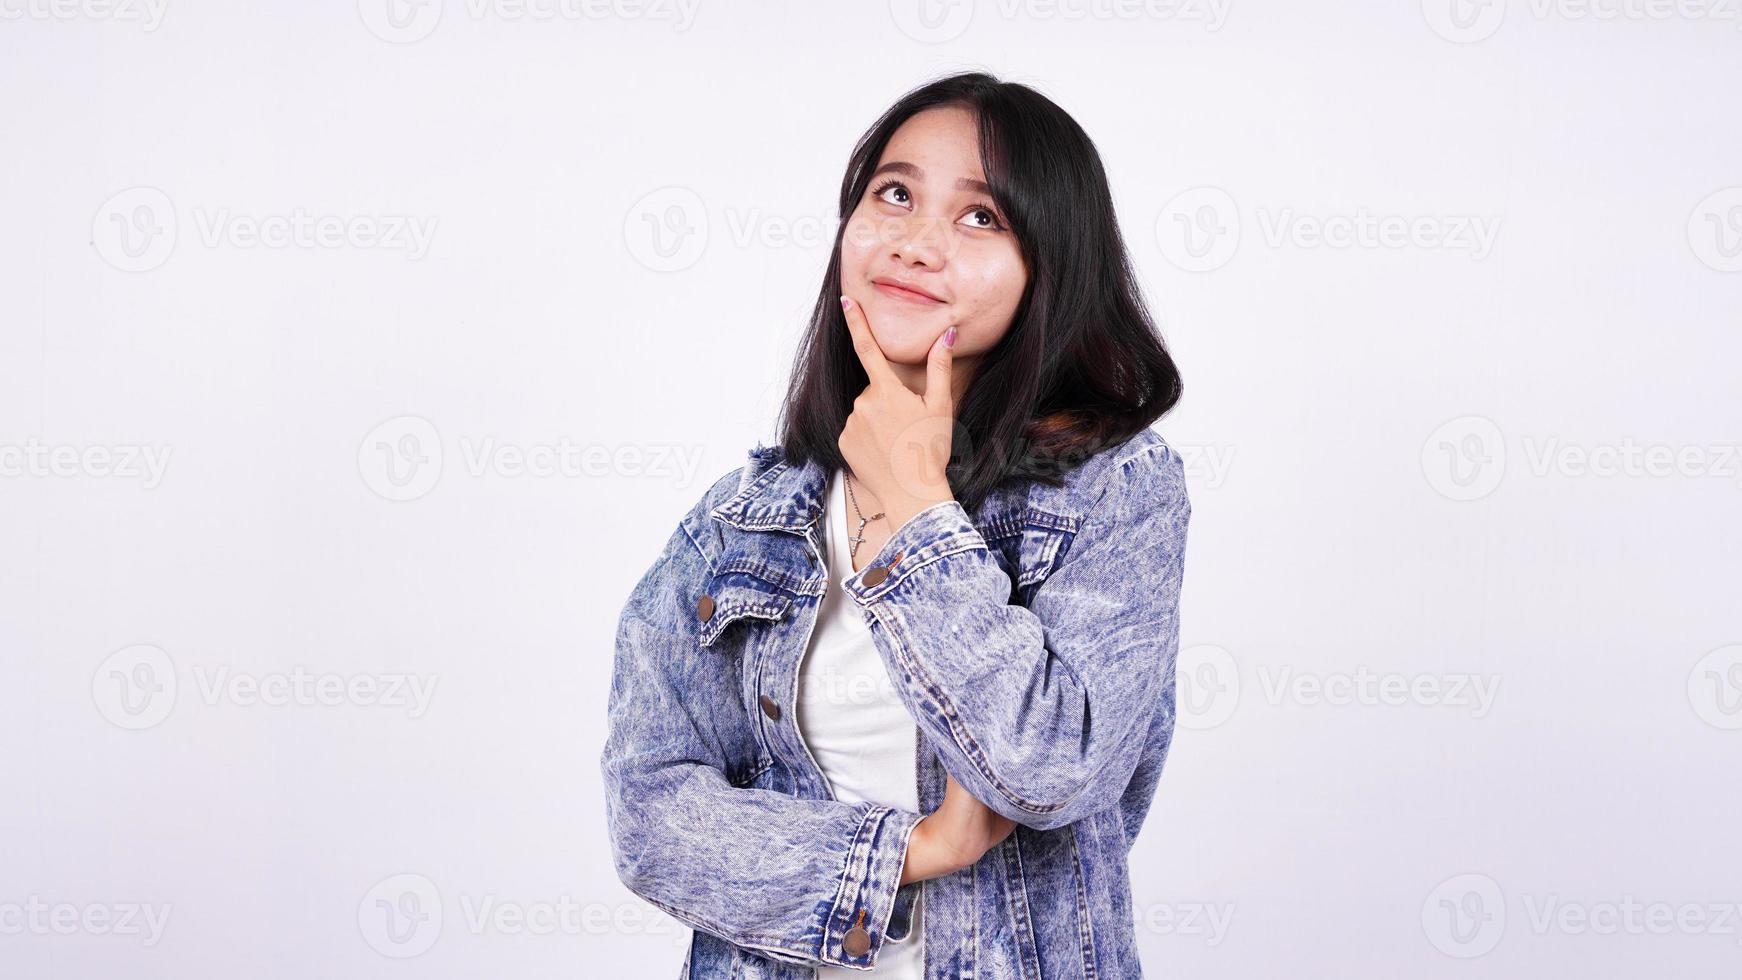 Aziatische vrouw die lacht met een spijkerjasje en een idee denkt met een geïsoleerde witte achtergrond foto